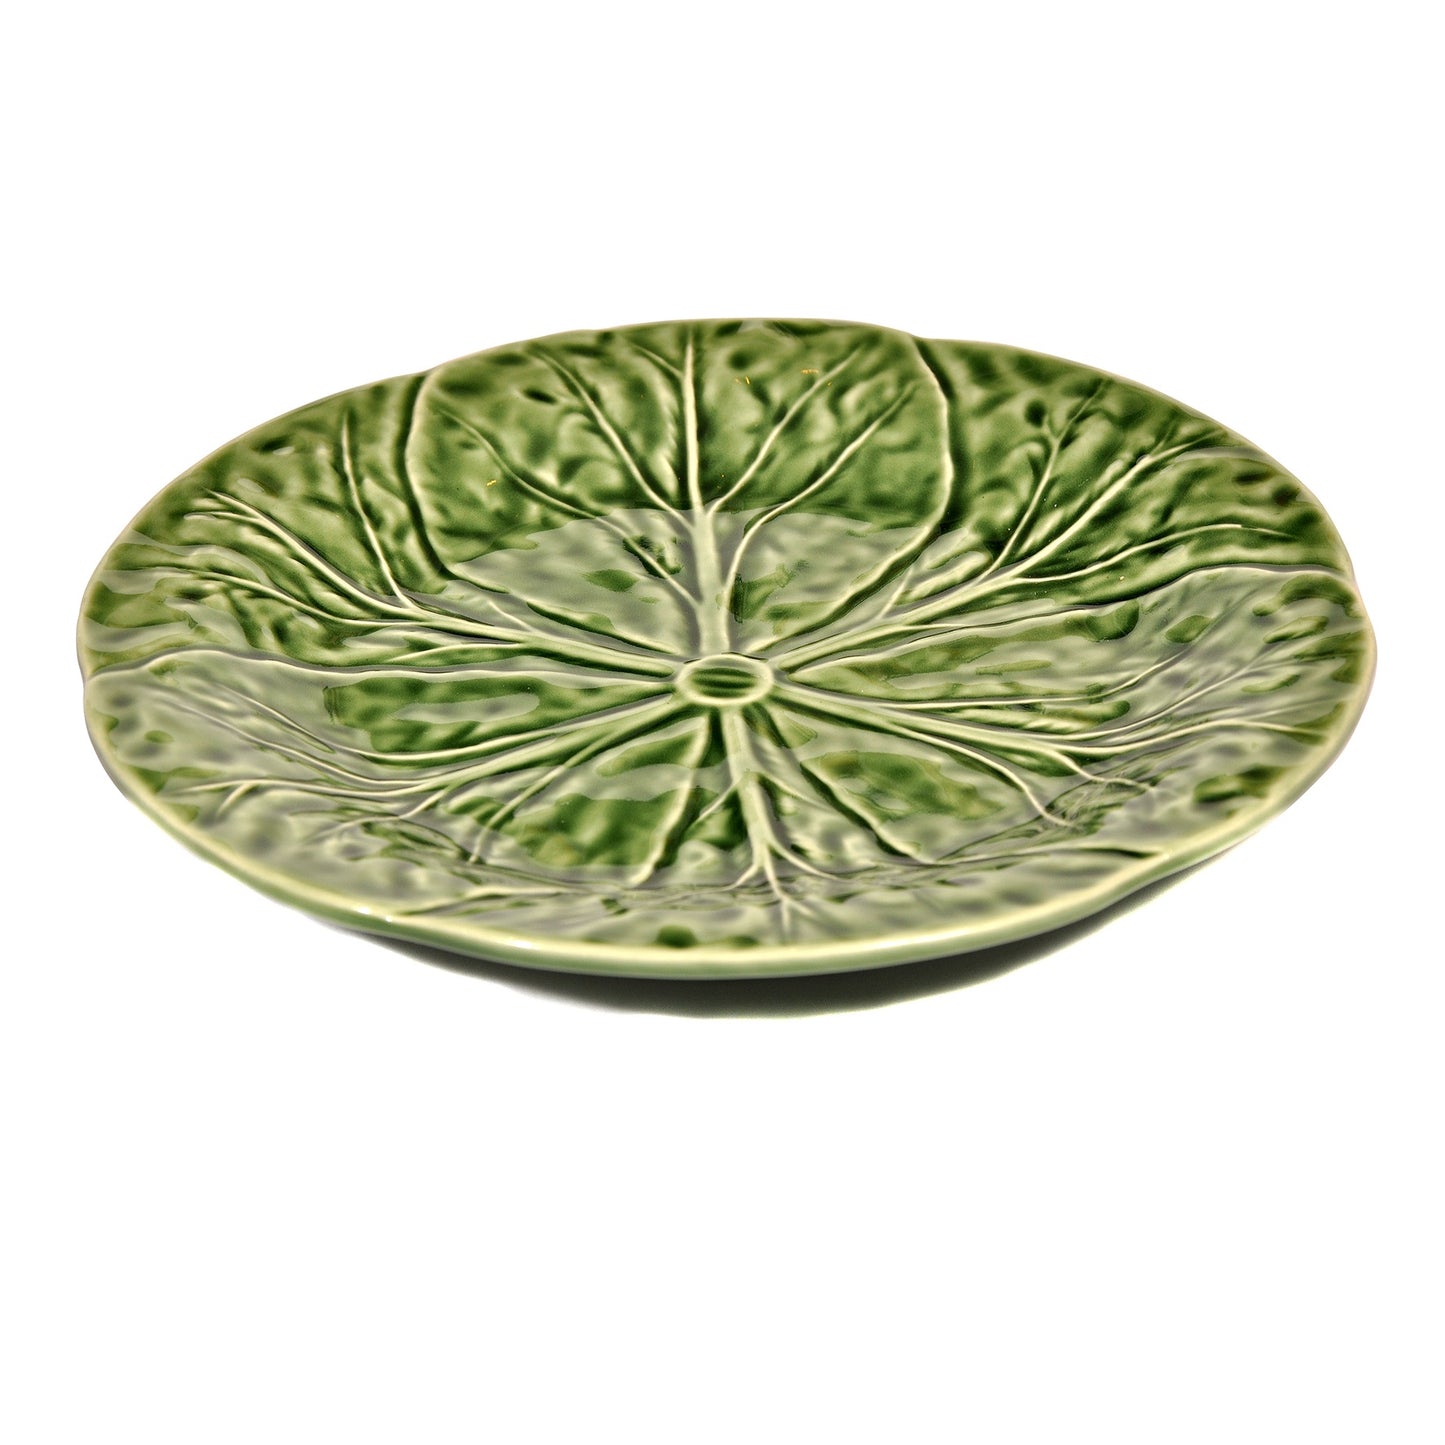 Green Cabbage Dessert Plate Joanna Wood Shop